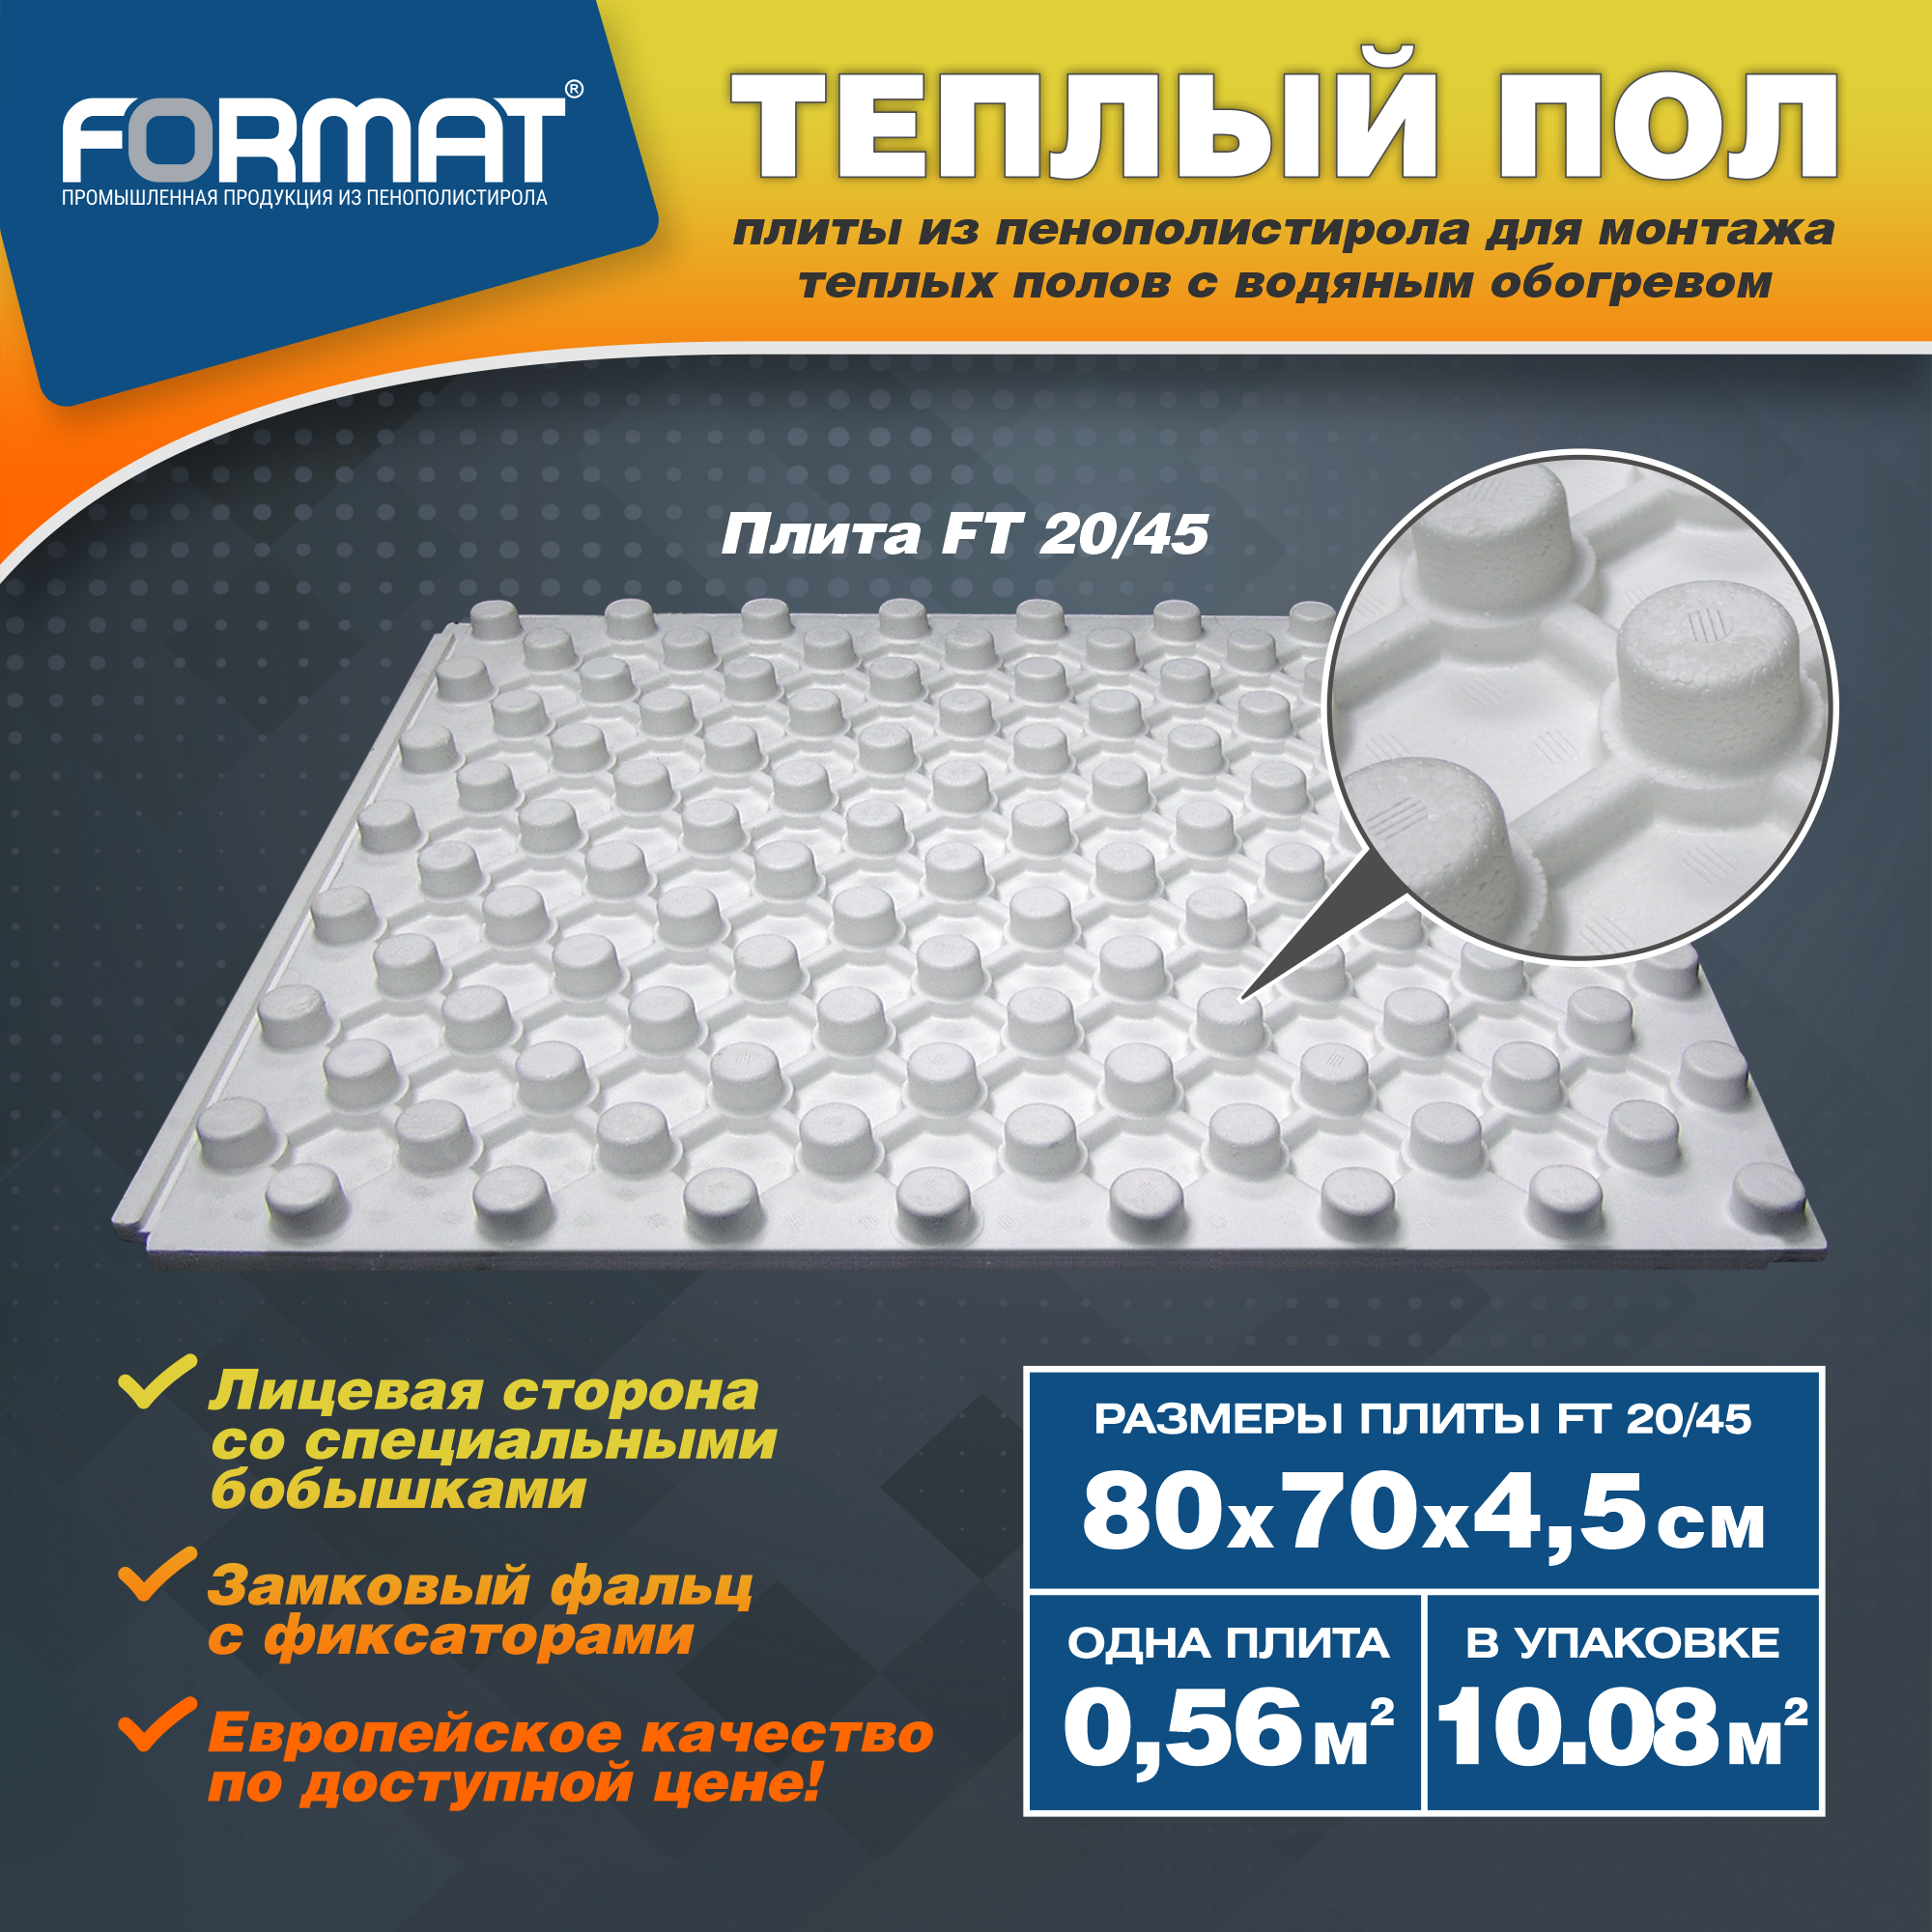 Плиты для тёплого пола FORMAT FT20/45, 10,08 кв.м, 18 шт. пенополистирол